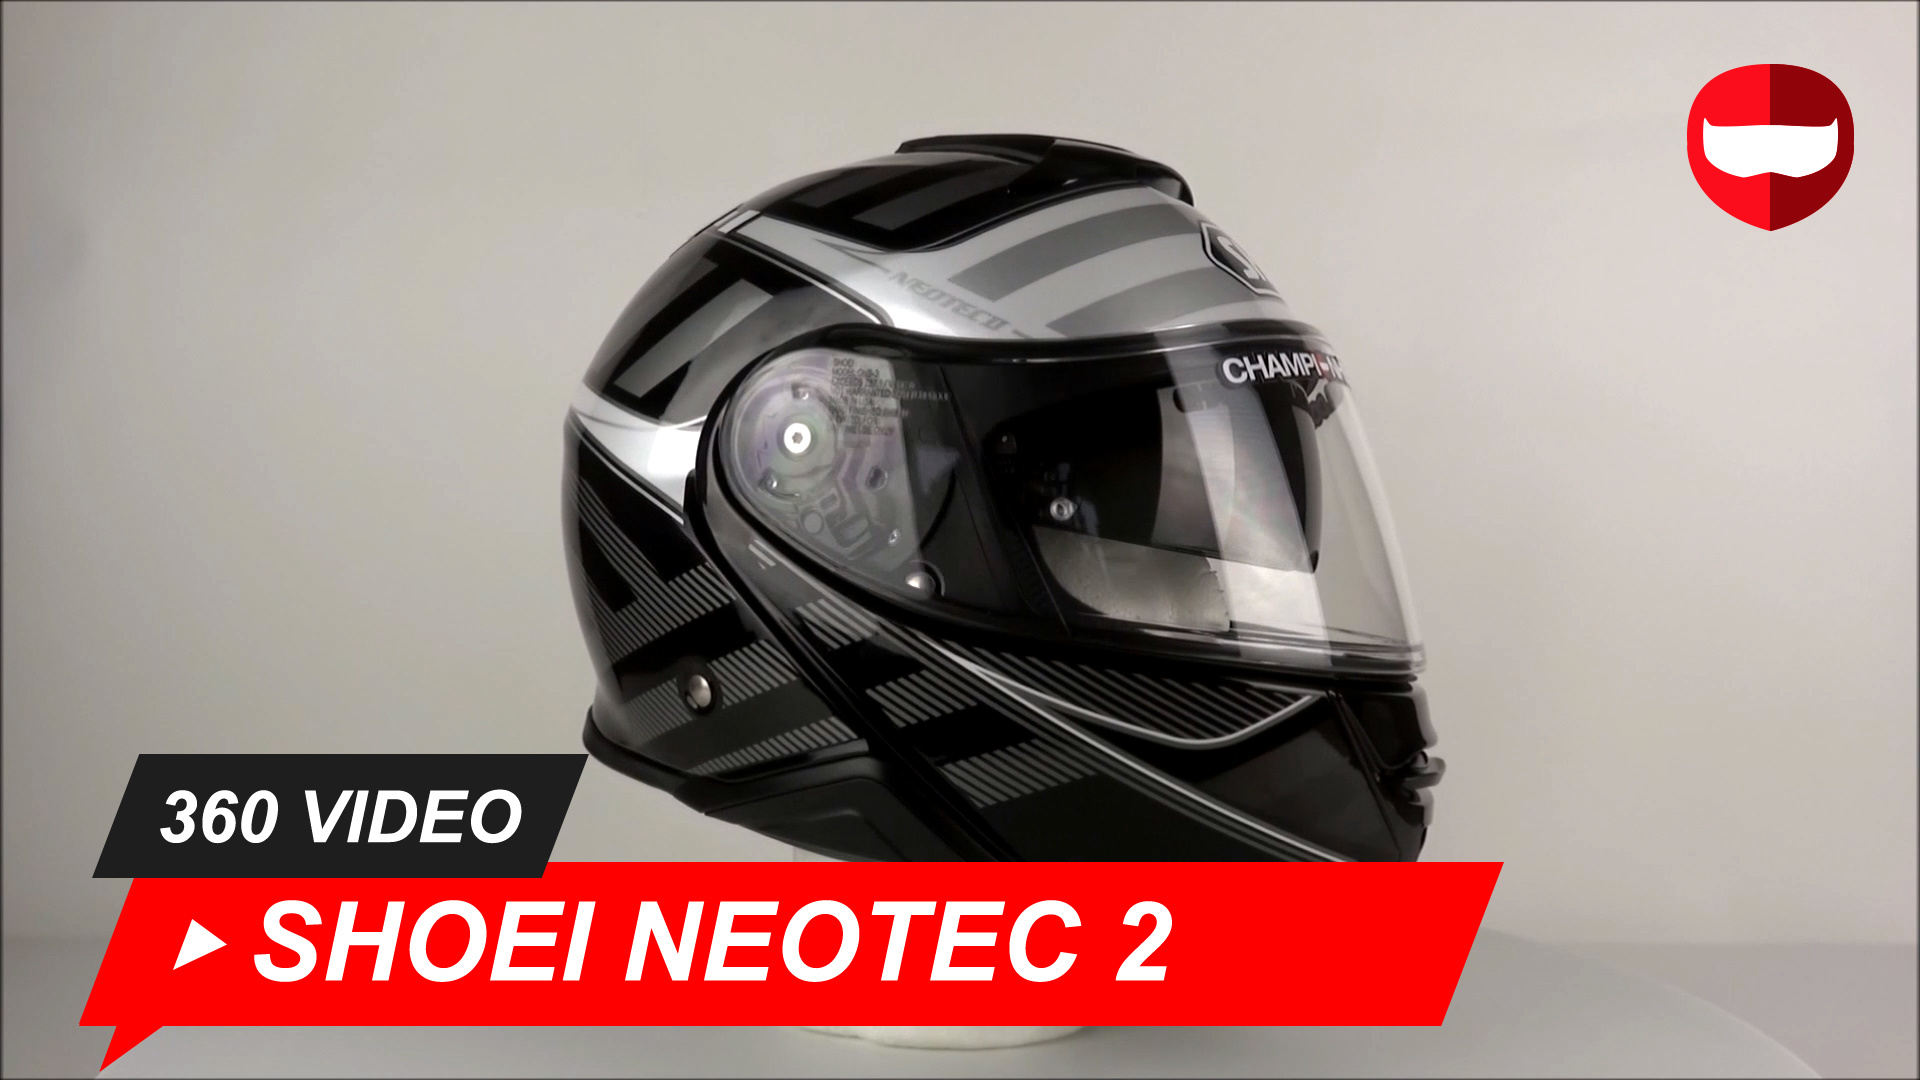 Shoei Neotec 2 Splicer Tc 5 Helmet 360 Video Champion Helmets Motorcycle Gear